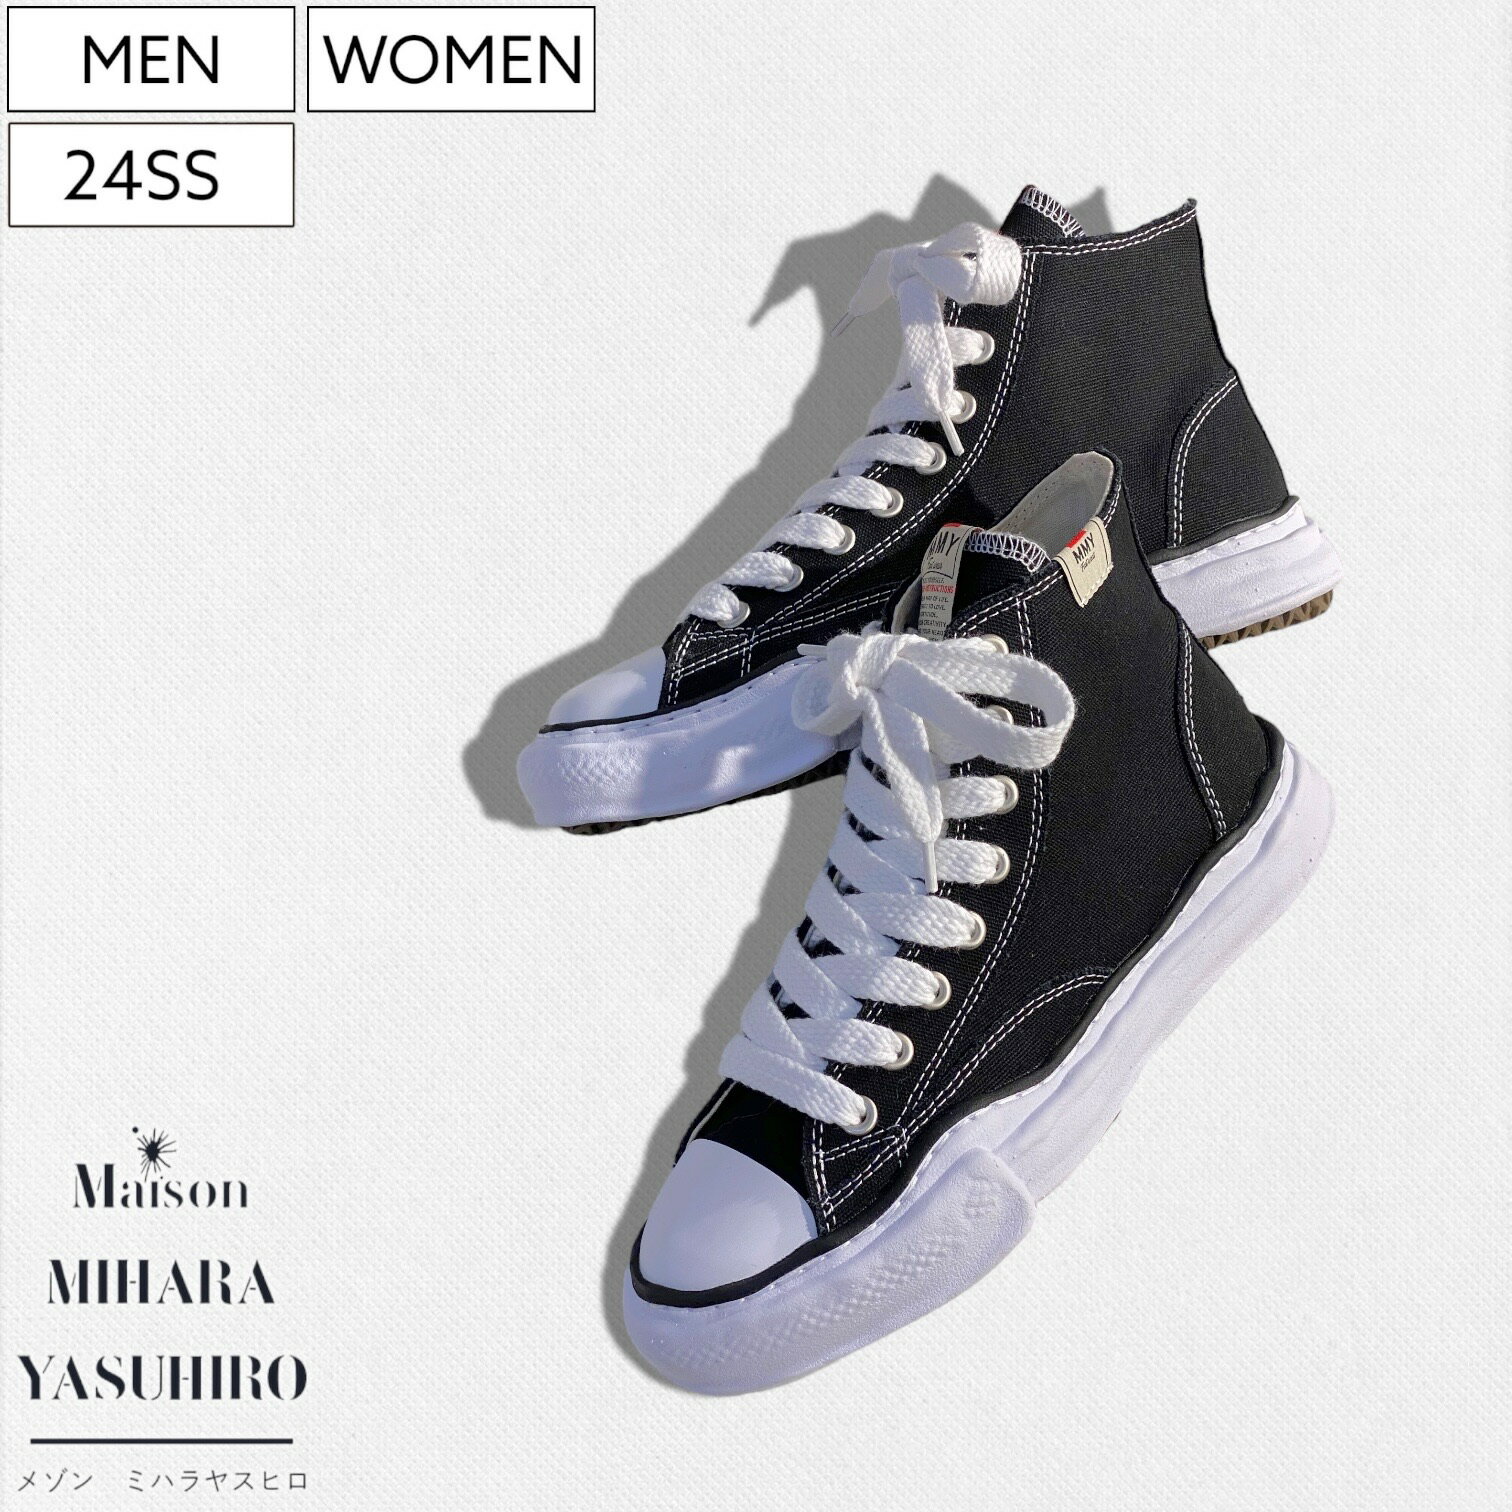 Maison MIHARA YASUHIRO - メゾン ミハラヤスヒロ - デザイナー自身が粘土で型取ったオリジナルソールを使用！キャンパスハイカットスニーカー シューズ 靴 Canvas High-top Sneaker PETERSON ピーターソン A01FW701 ホワイト×ブラック